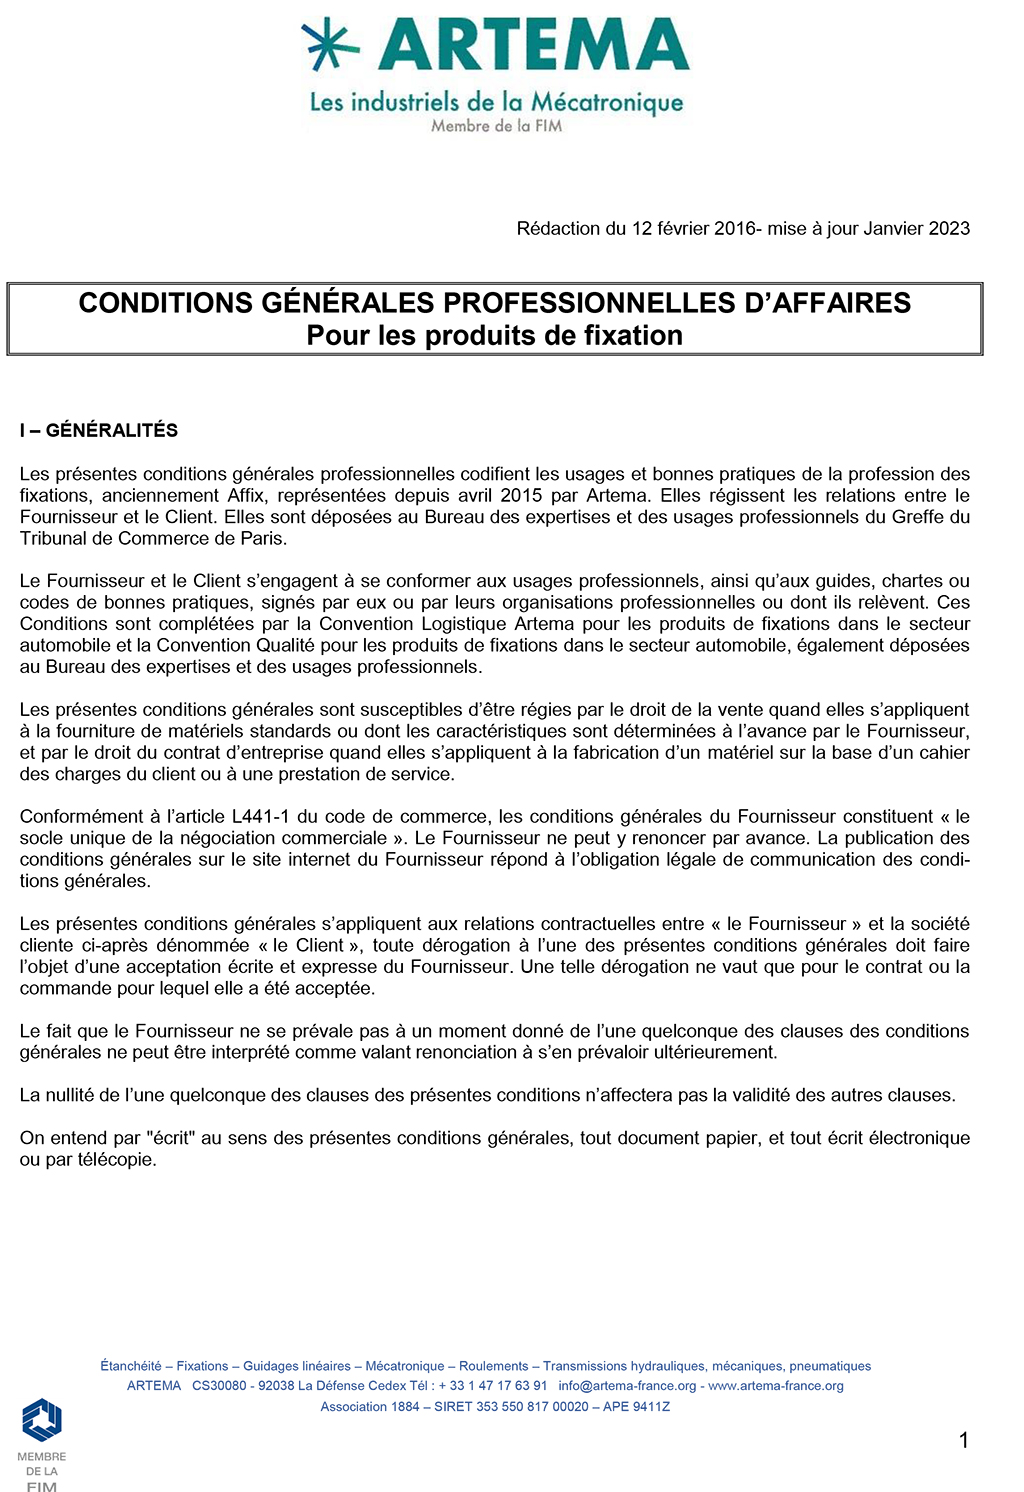 Conditions générales professionnelles d'affaires pour les produits de fixation (mise à jour 2023)